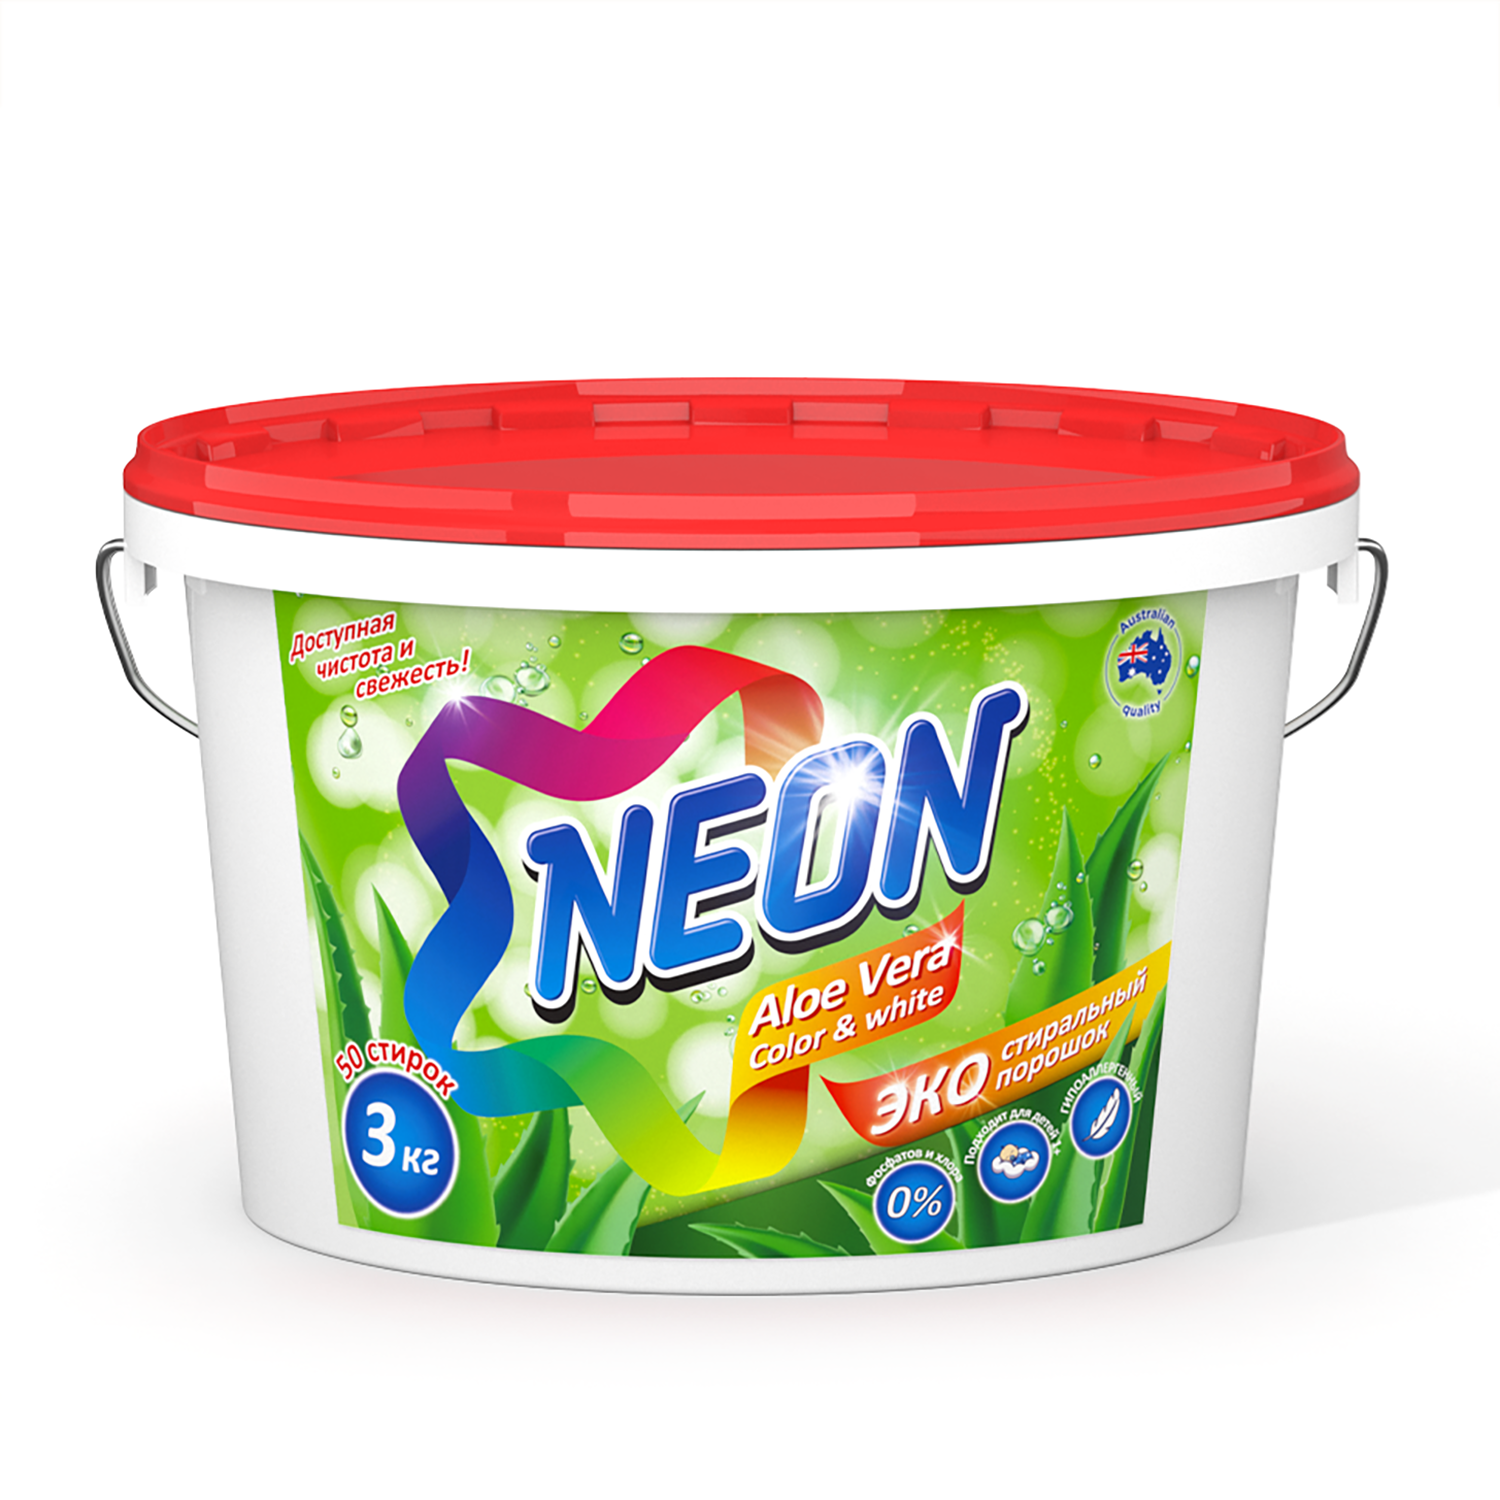 Стиральный порошок NEON Color white экологичный гипоаллергенный c алоэ вера 3 кг 50 стирок - фото 1